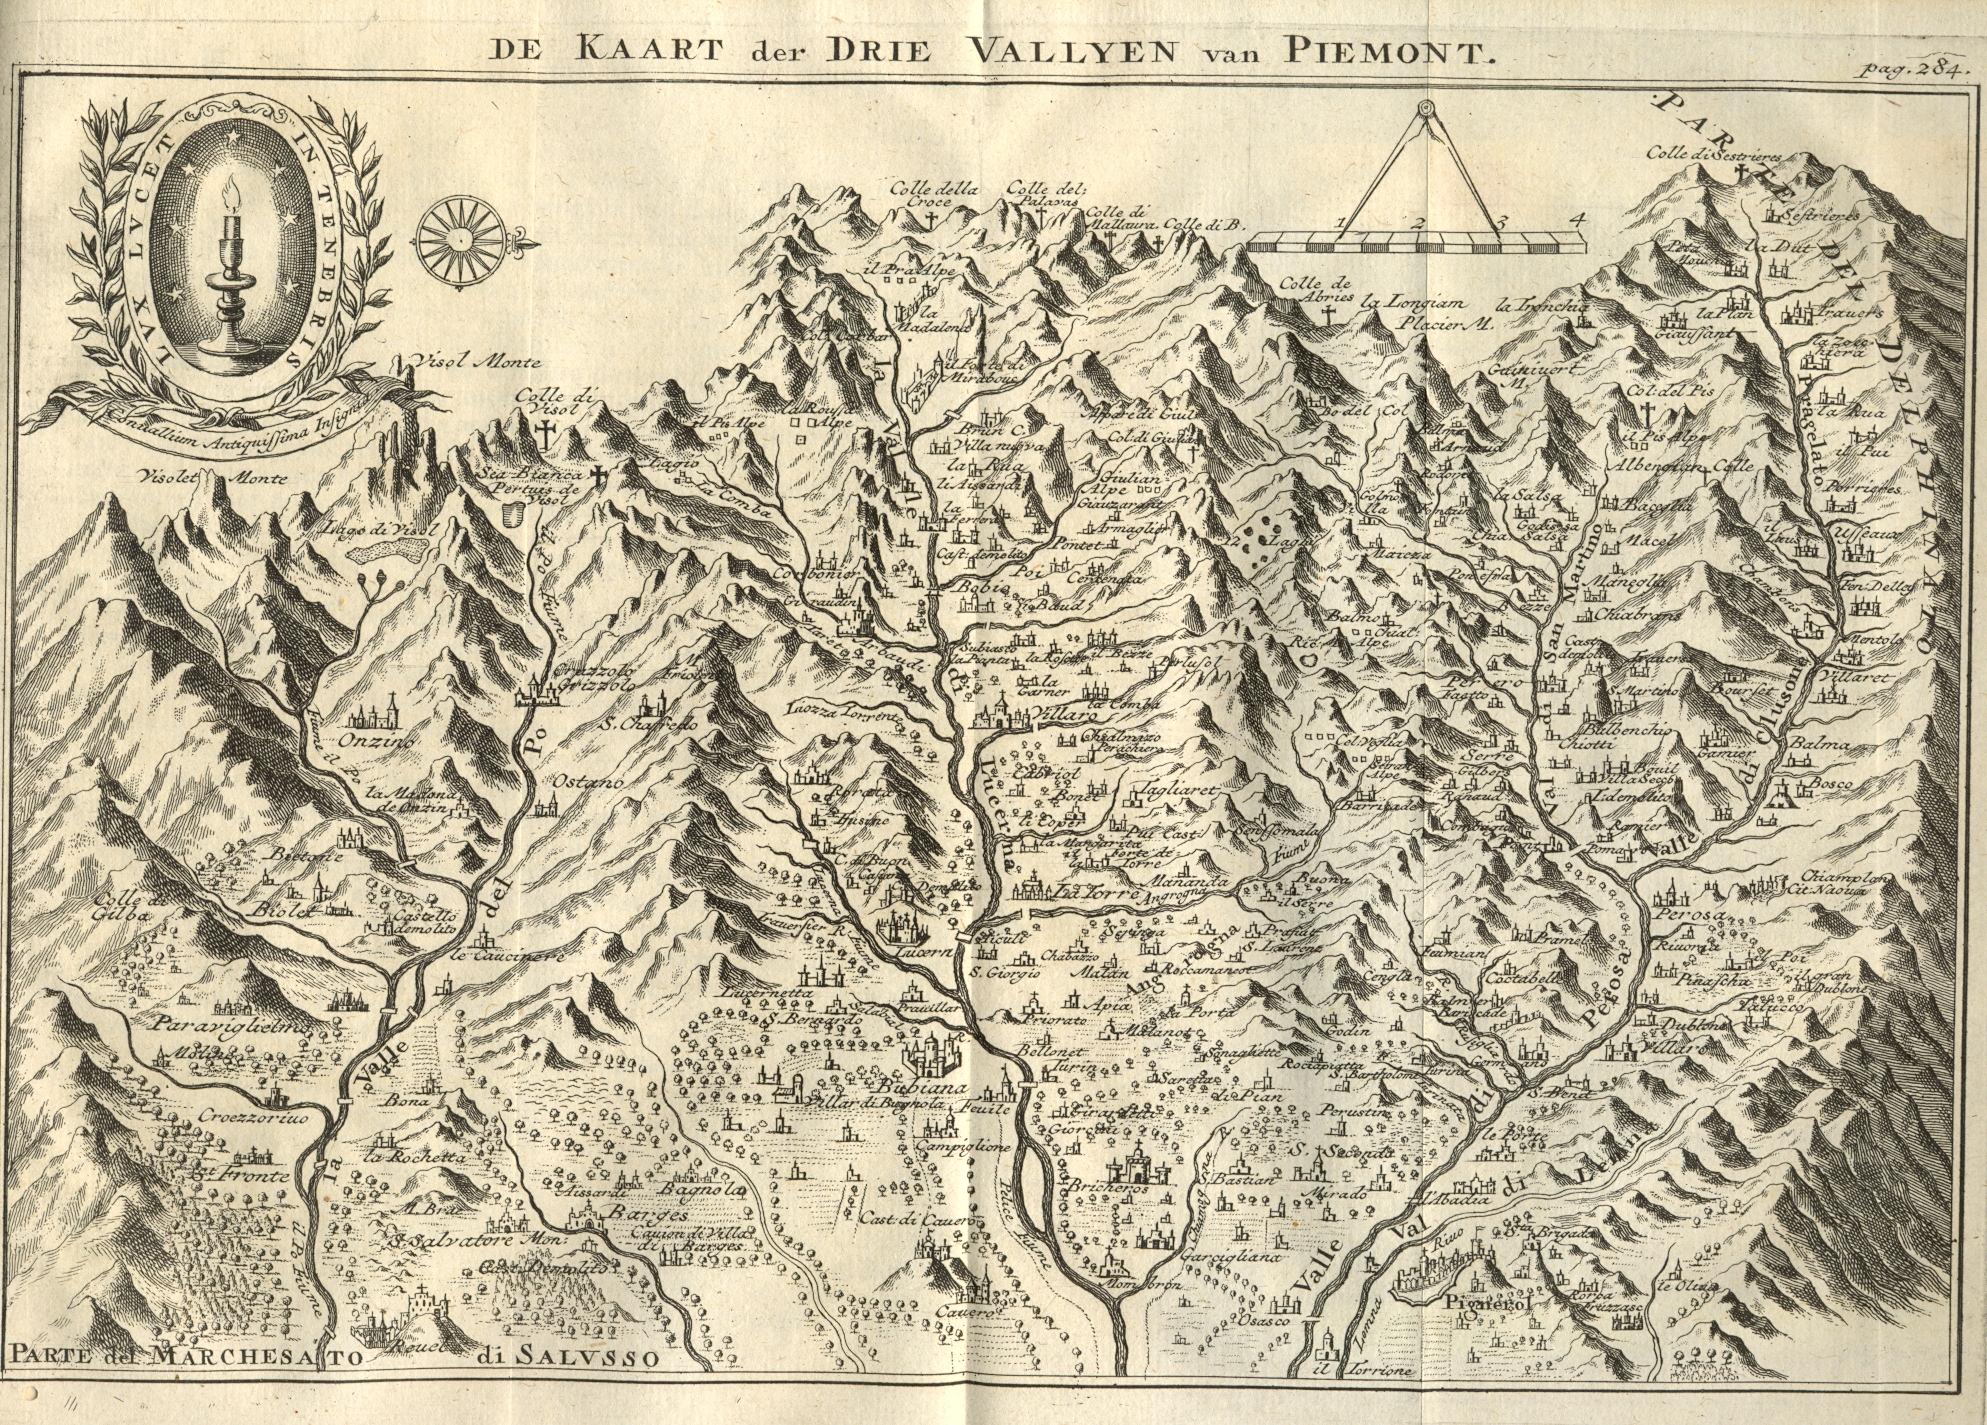 Kaart van de vallei van Piemonte in Frankrijk, waar de protestanten worden vervolgd, 1731.